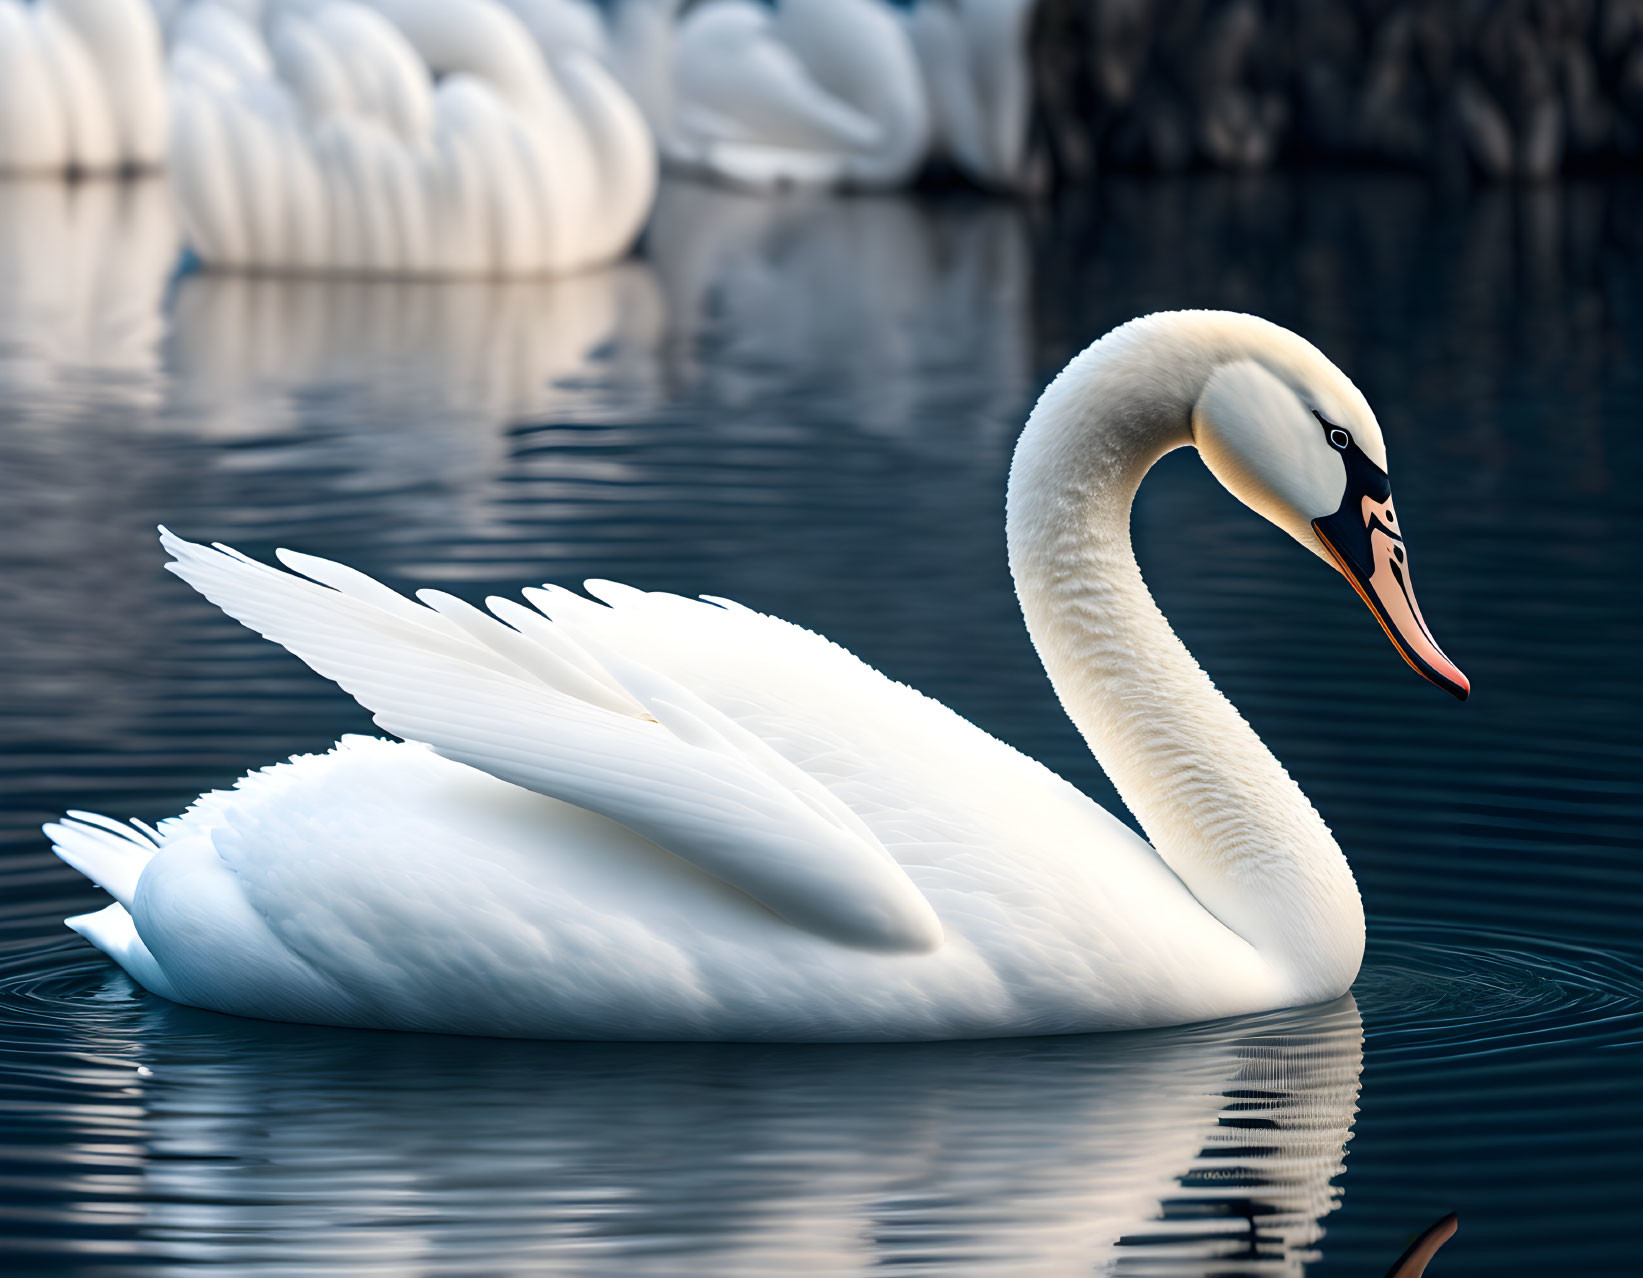 Elegant white swan with raised wings on serene blue water